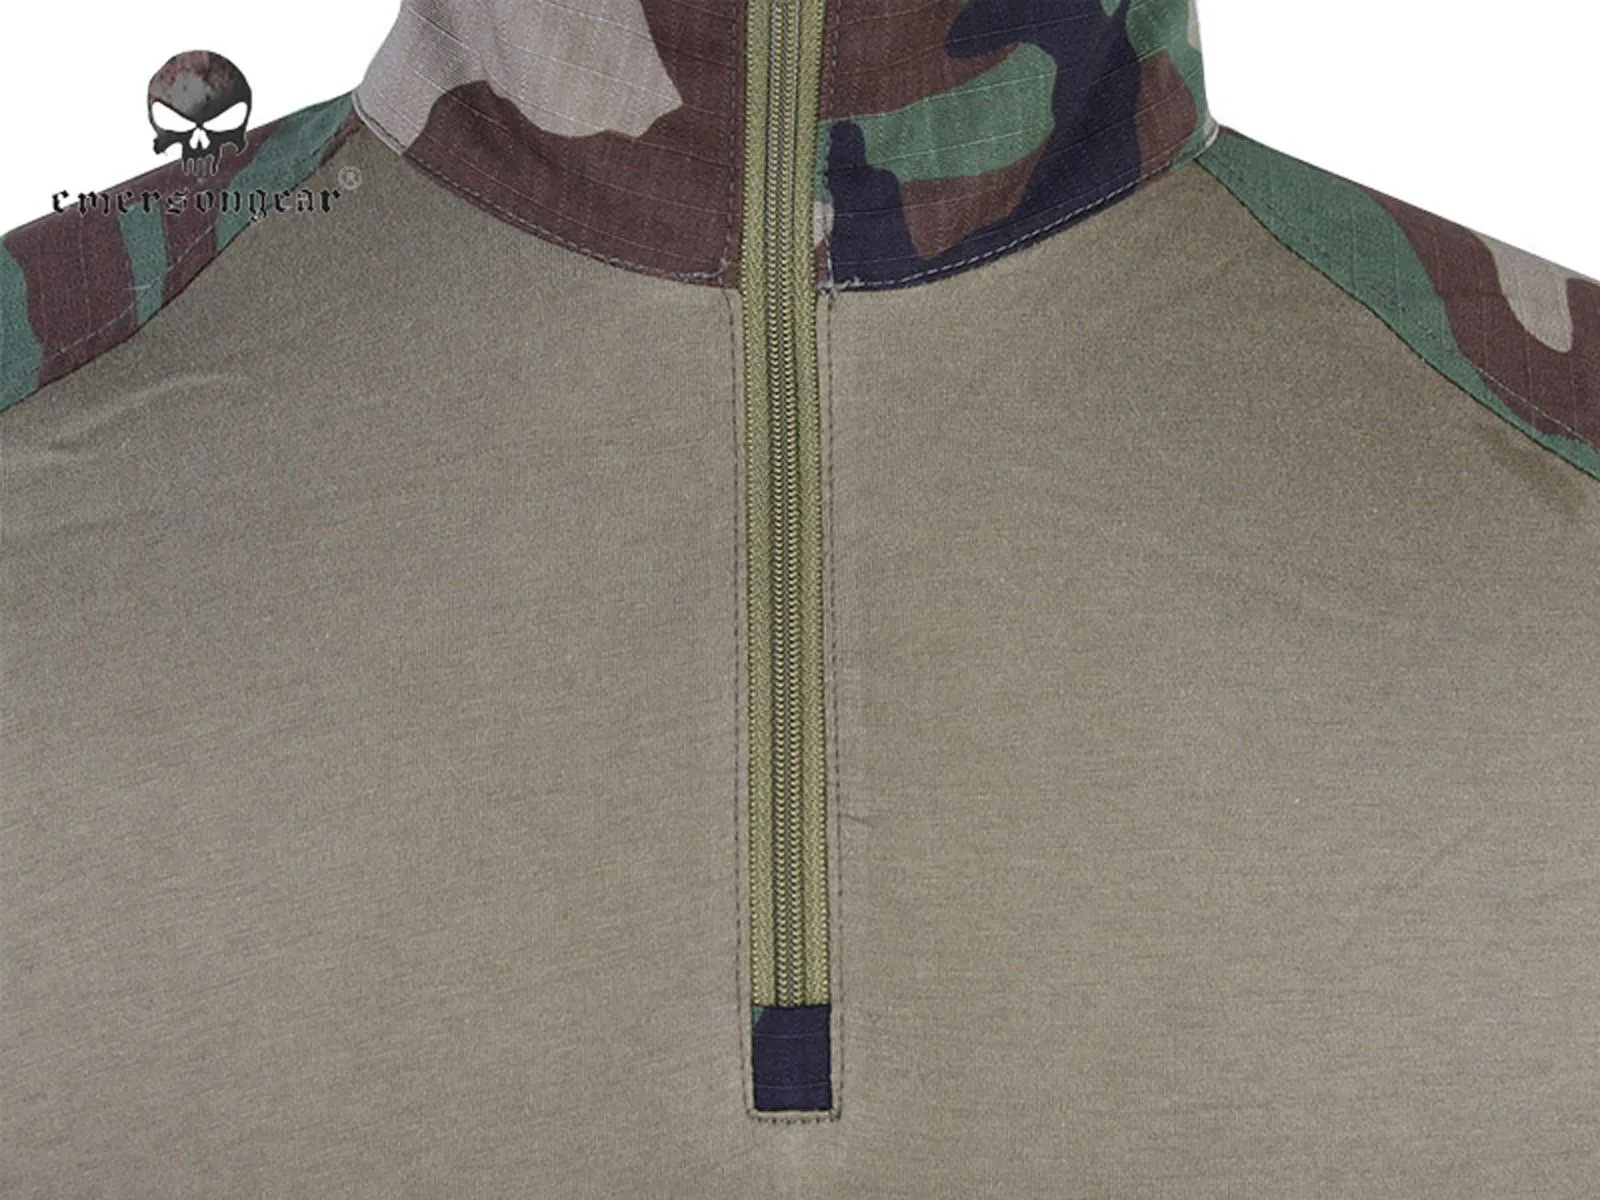 EMERSON Combat Gen3 рубашка Военная тактическая bdu Woodland EM9278|shirts retro|shirt logoshirt design for men |